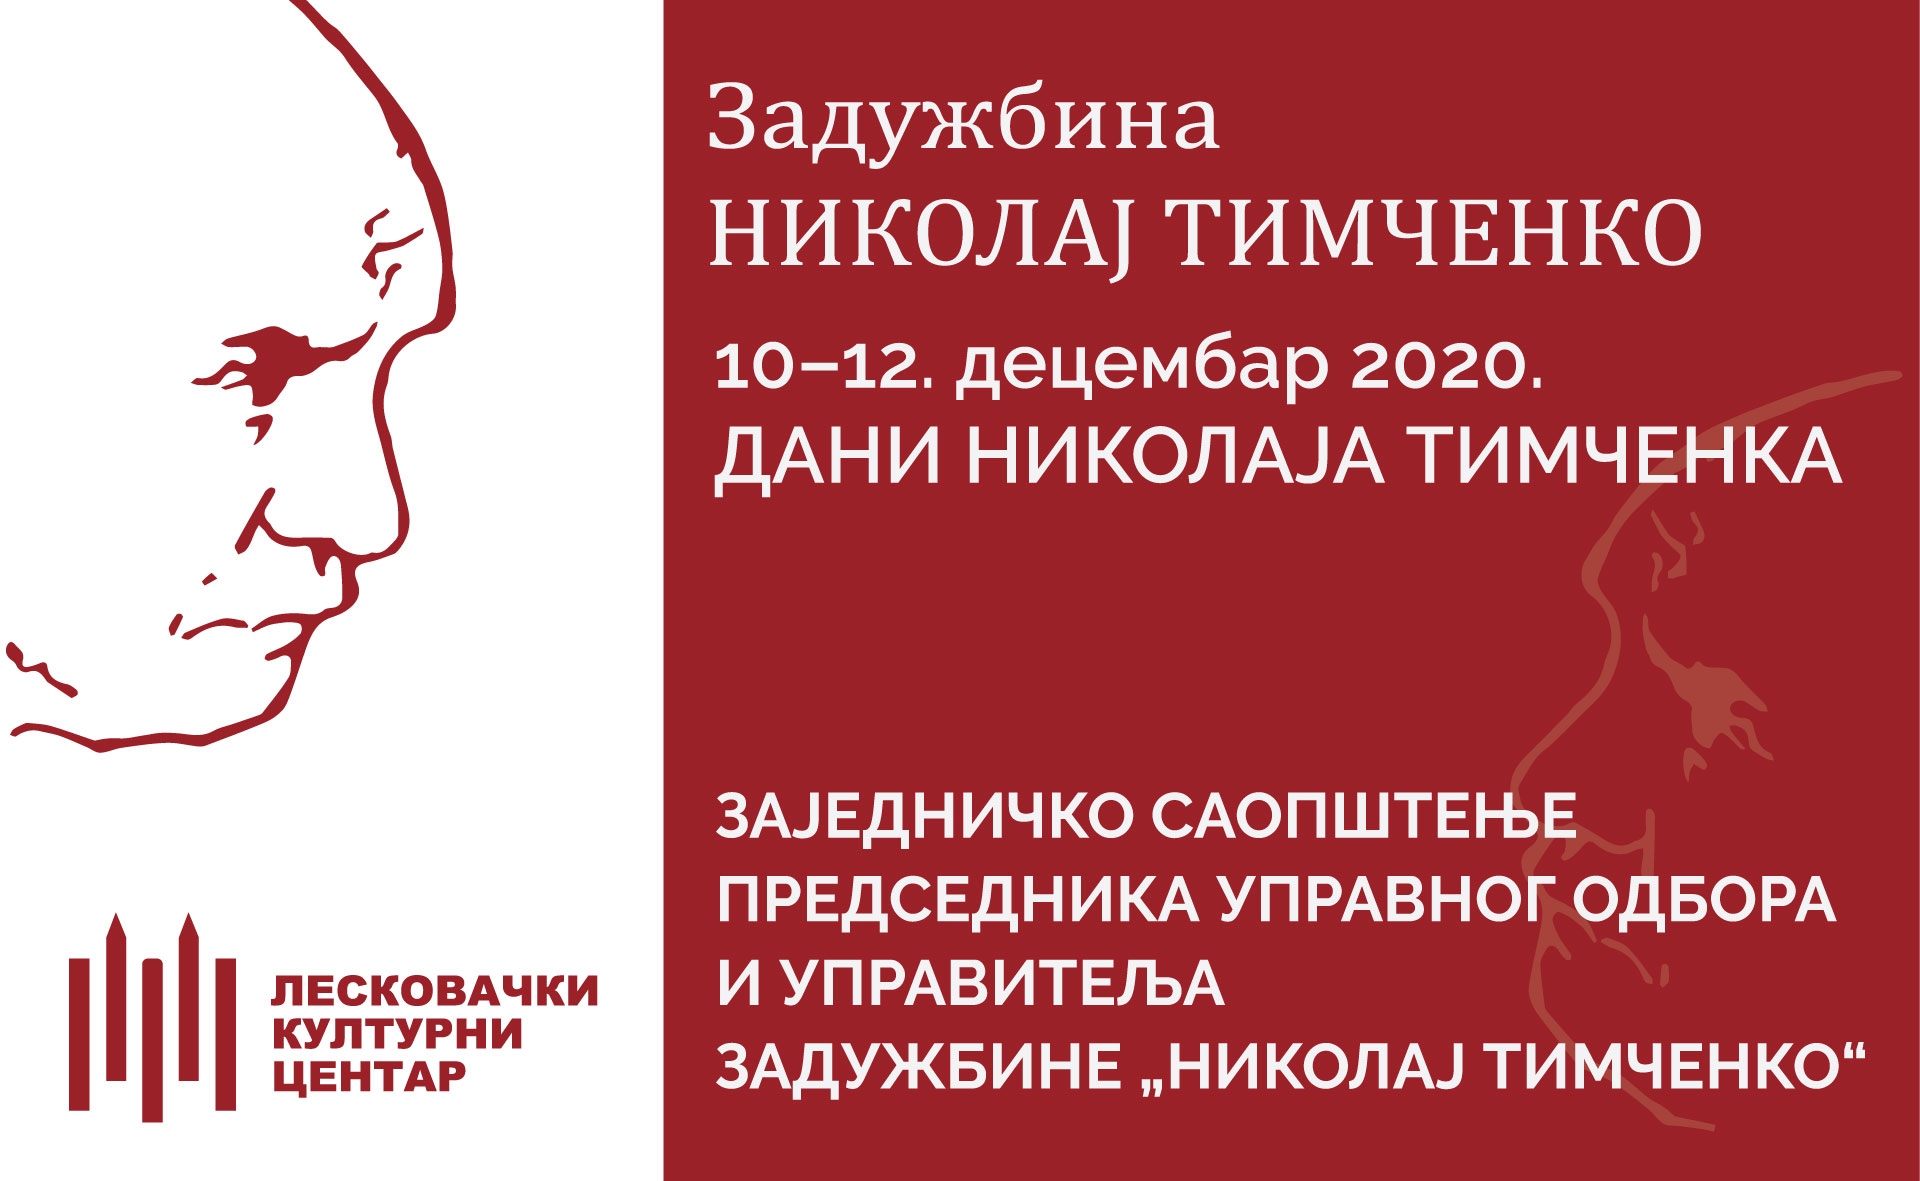 Zajedničko saopštenje predsednika Upravnog odbora i upravitelja Zadužbine „Nikolaj Timčenko“